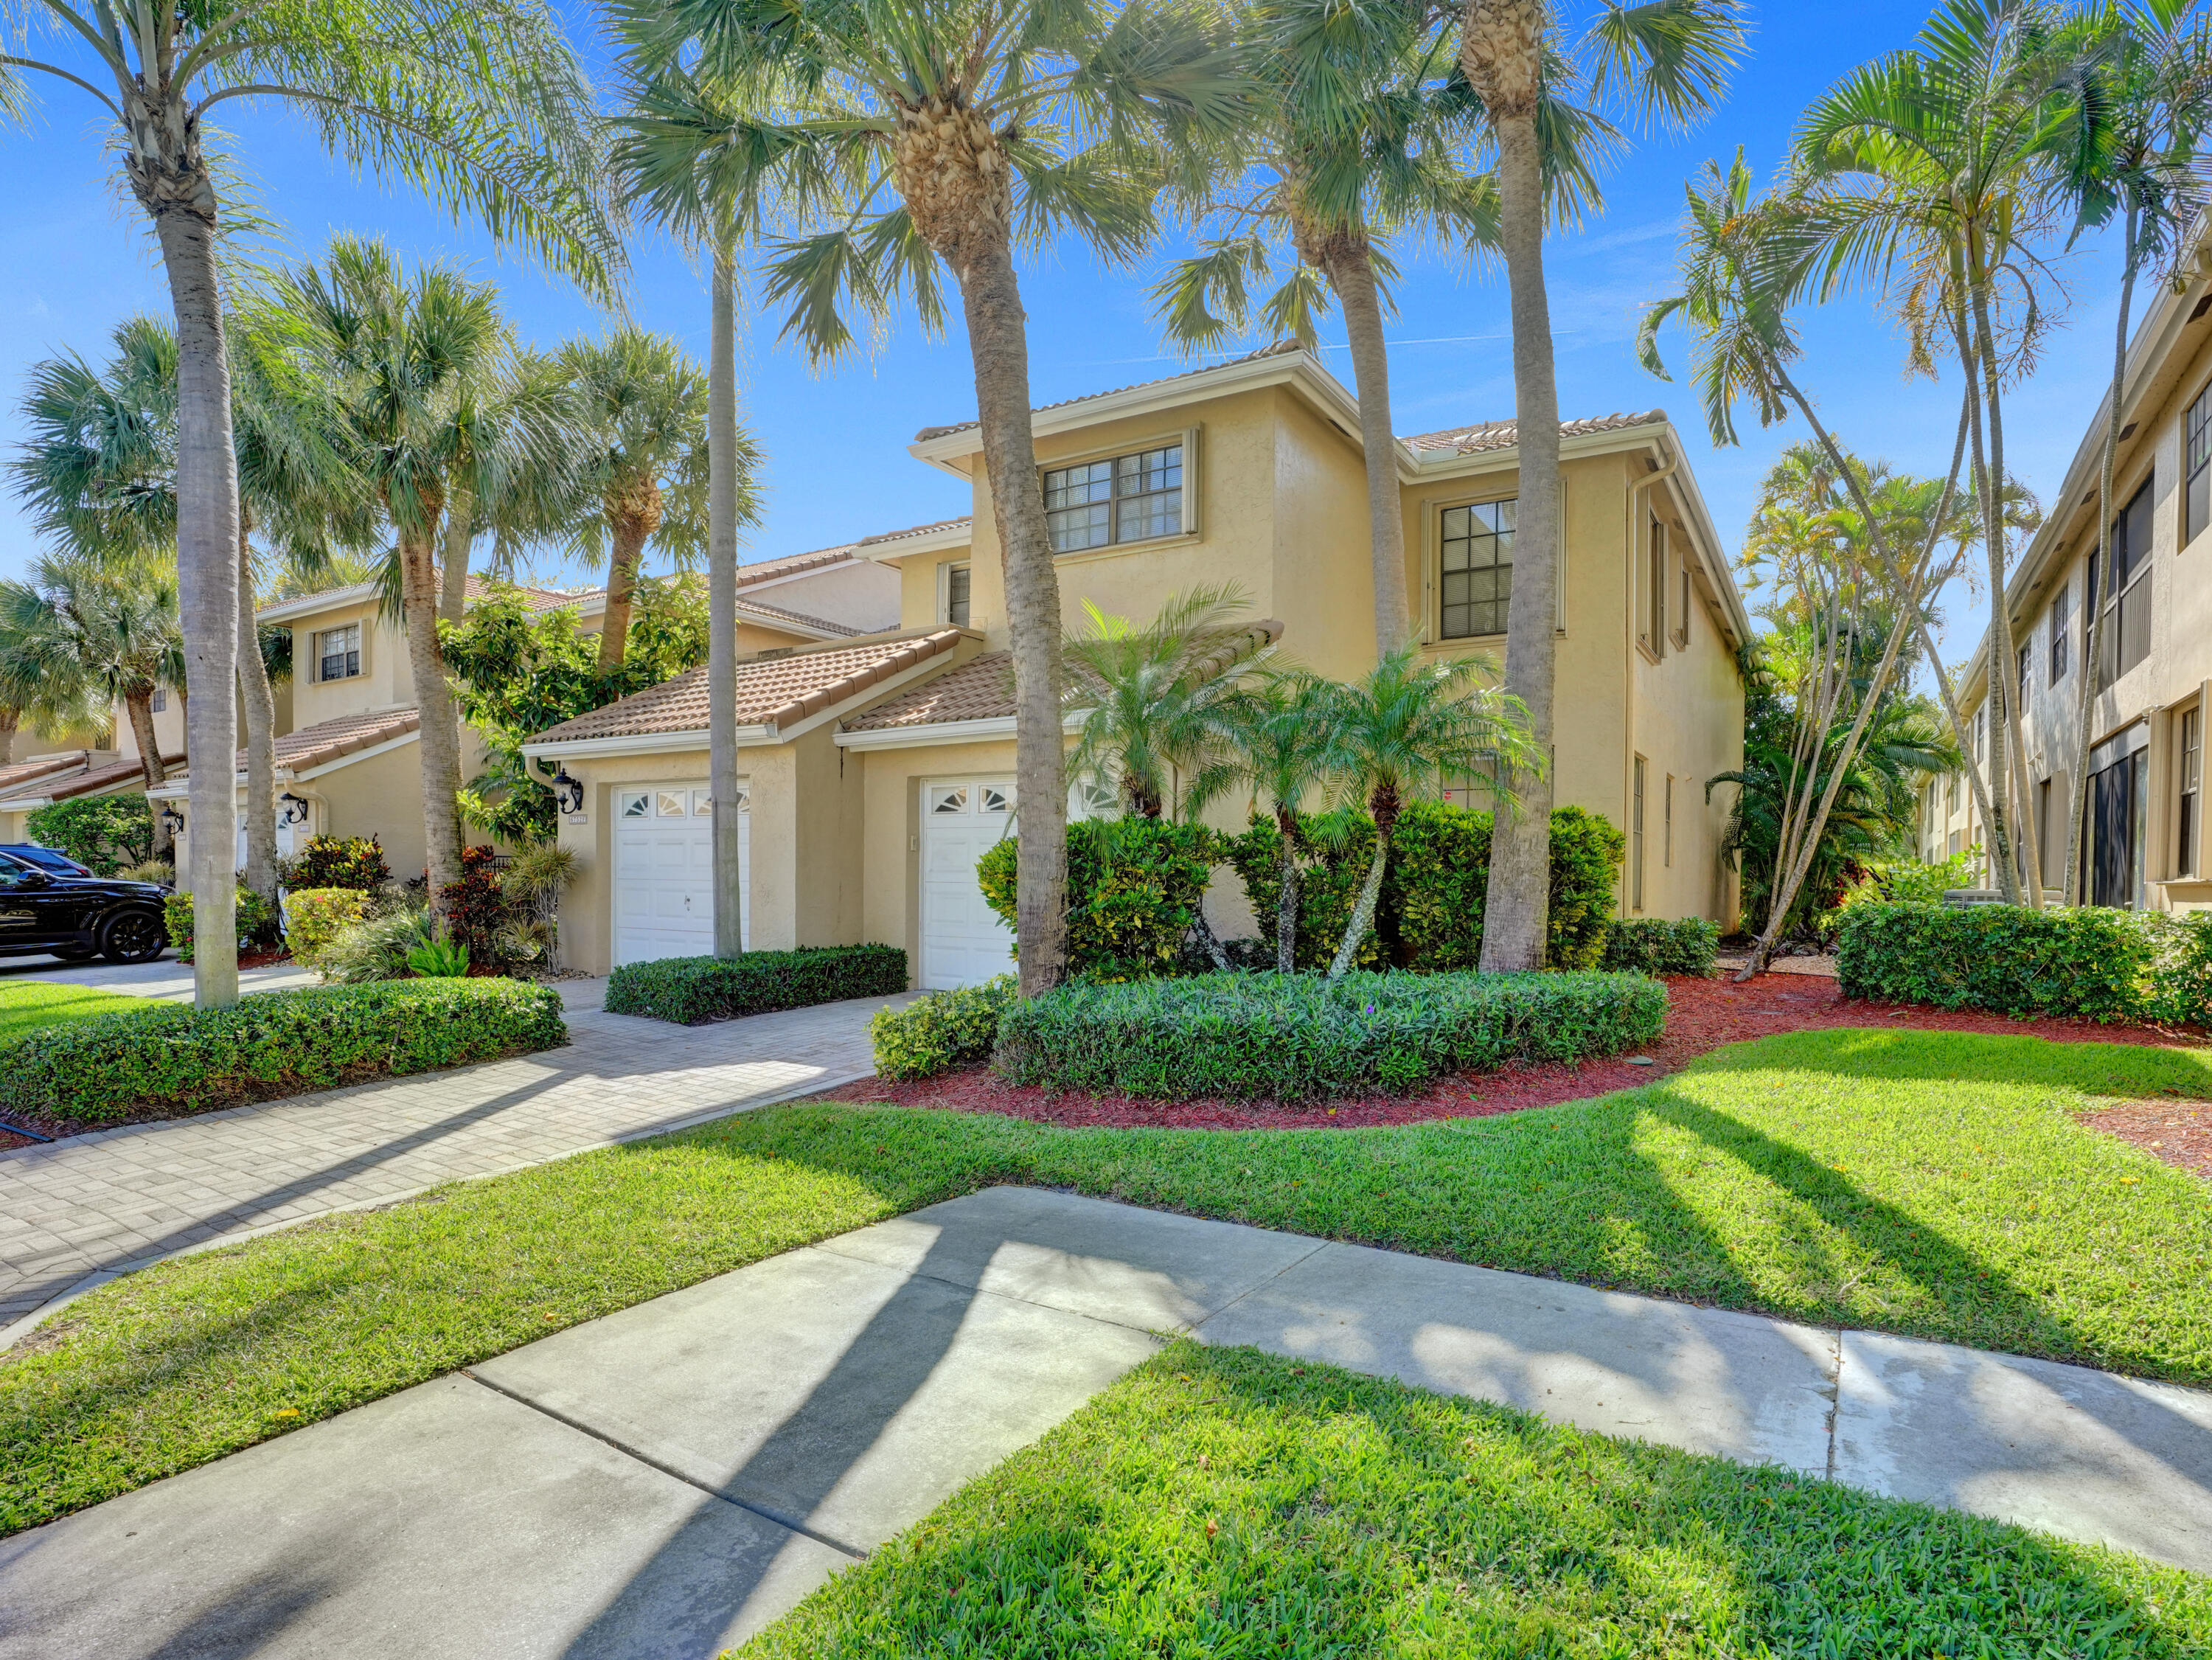 Property for Sale at 6752 Montego Bay Boulevard Blvd E, Boca Raton, Palm Beach County, Florida - Bedrooms: 3 
Bathrooms: 2  - $515,000